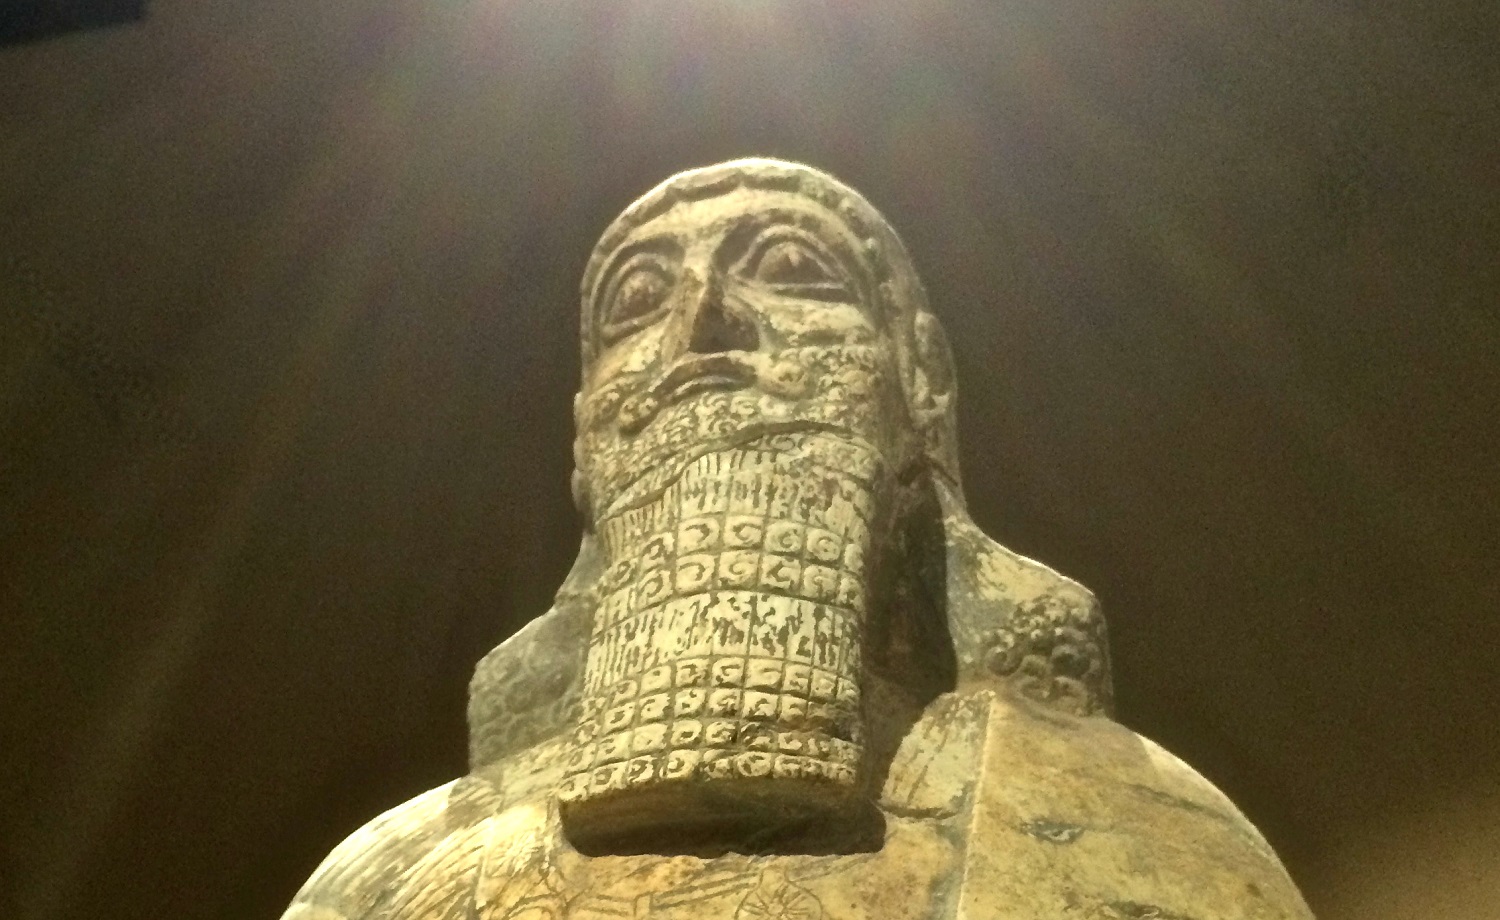 Une statue de Salmanazar, un gouvernant assyrien, volée en 2003 et restituée à l’Irak par les États-Unis (MEE/Tom Westcott)